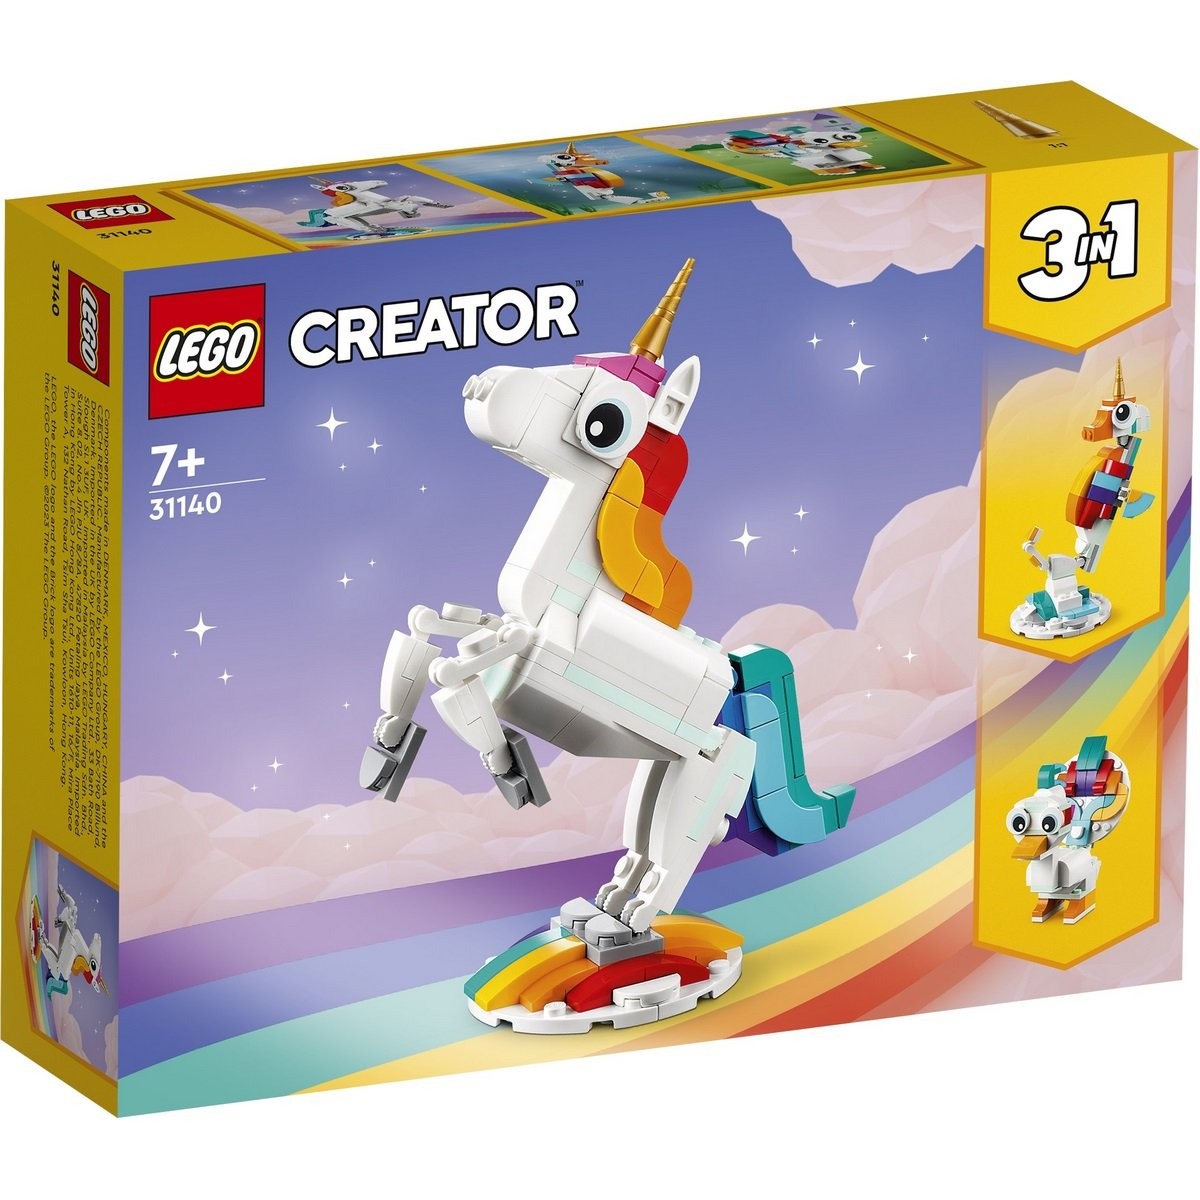 Licorne magique 3-en-1 Lego Creator 31140 - La Grande Récré